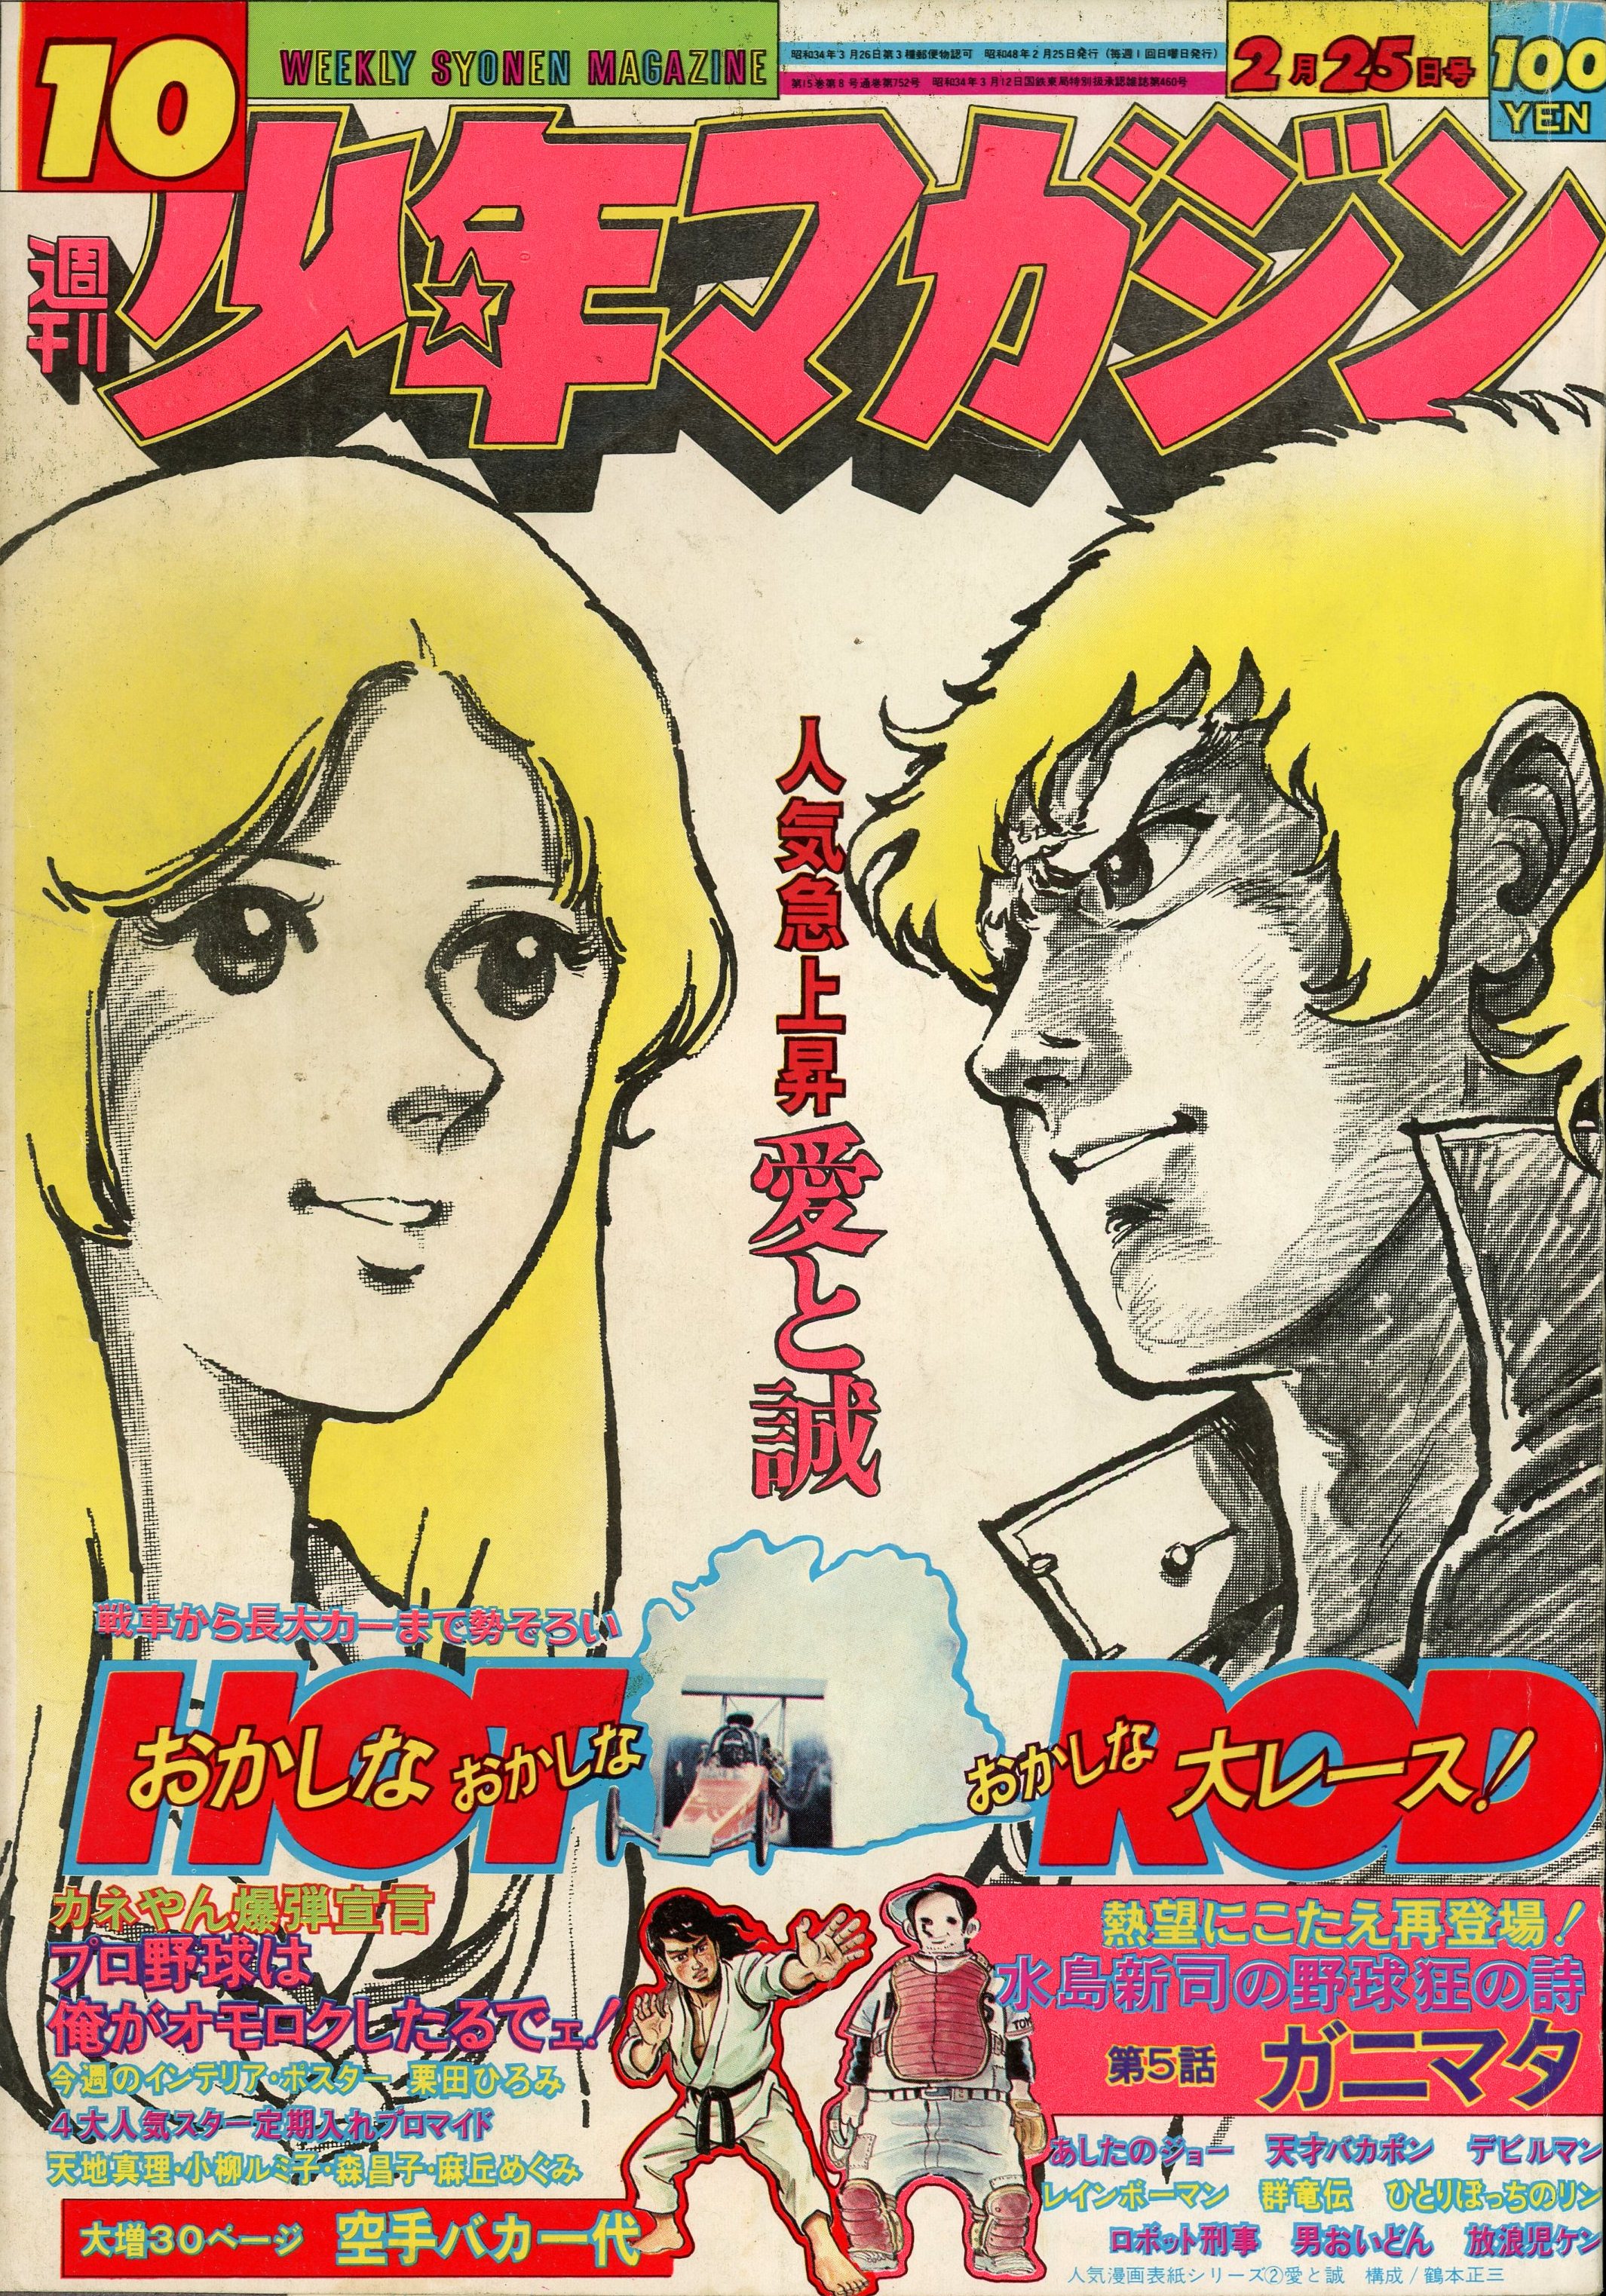 講談社 1973年(昭和48年)の漫画雑誌 週刊少年マガジン1973年(昭和48年 